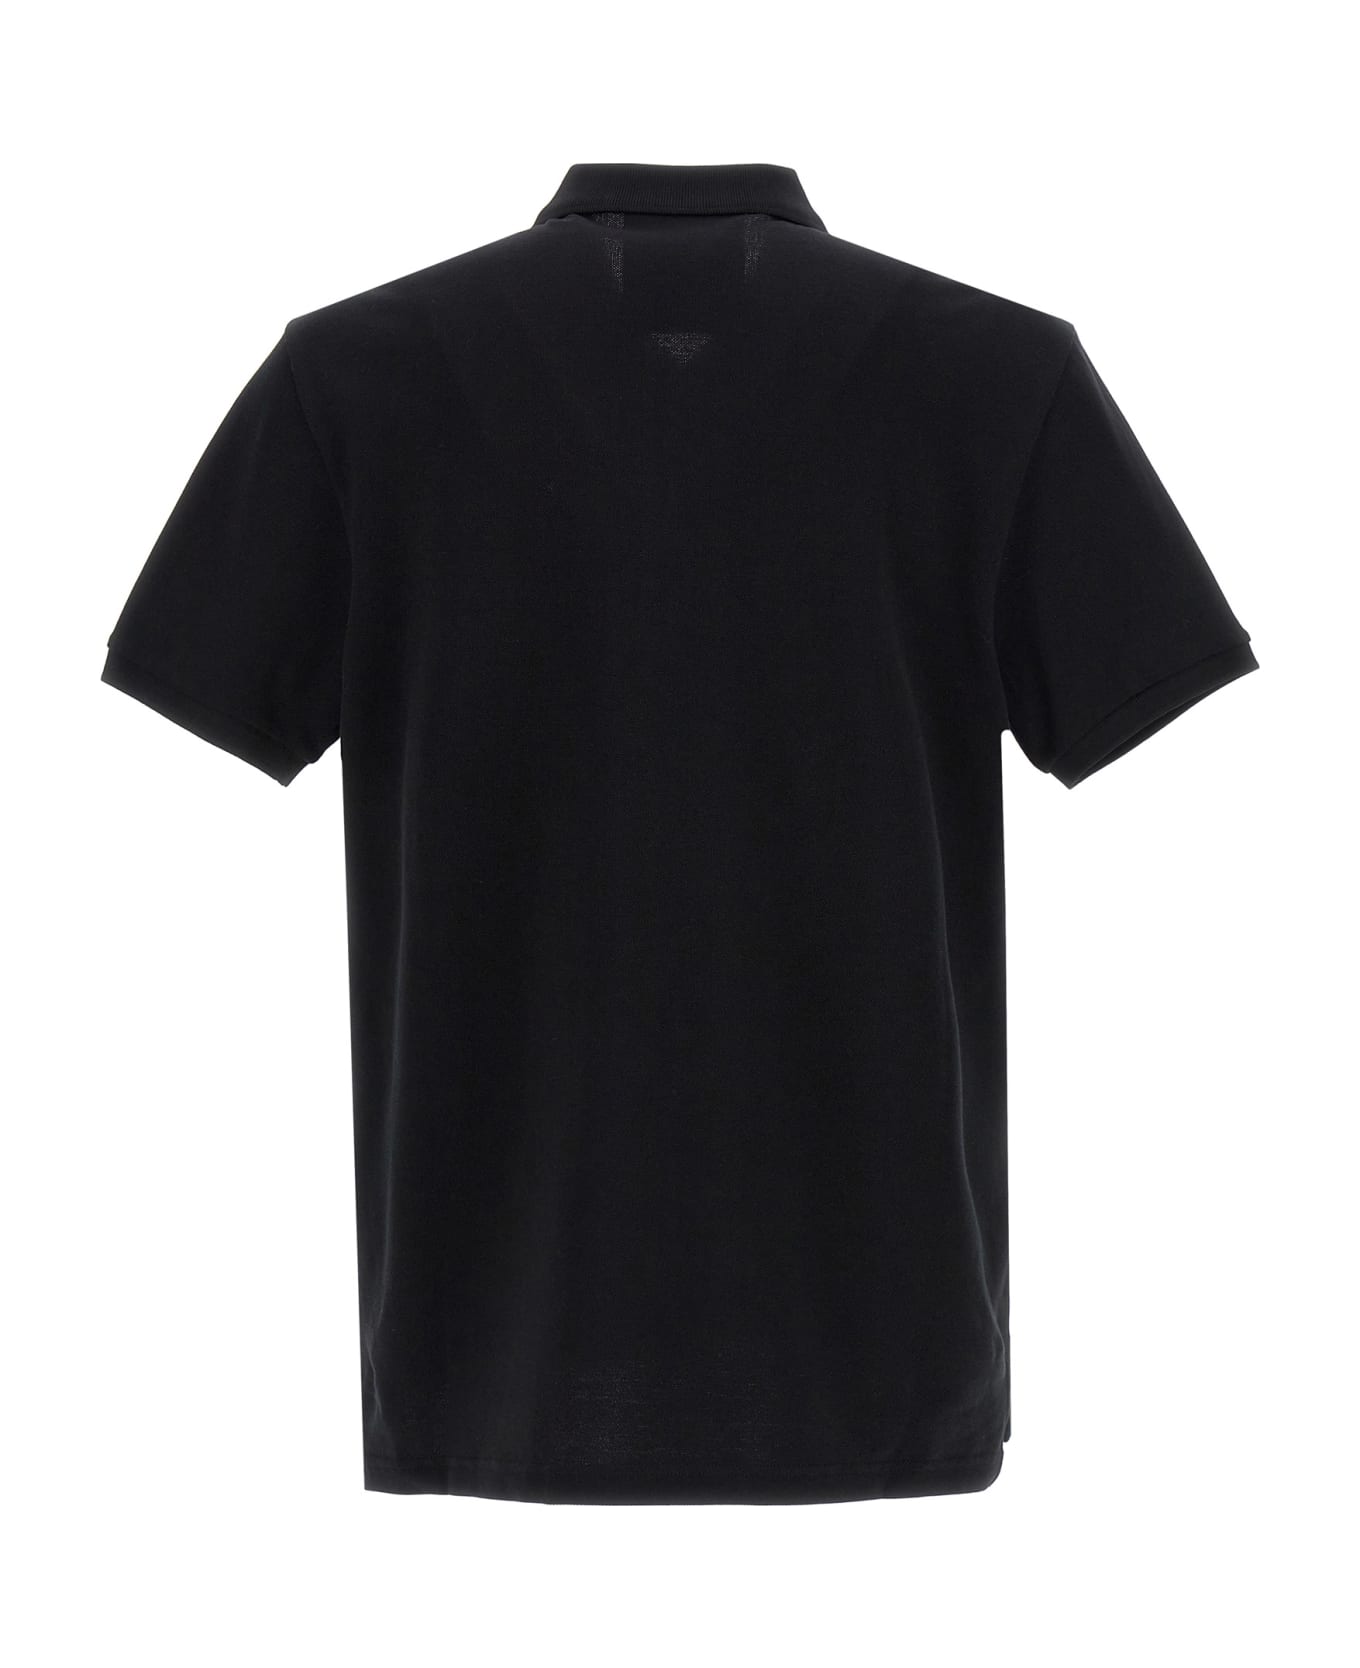 Moschino 'double Smile' Polo Shirt - White/Black